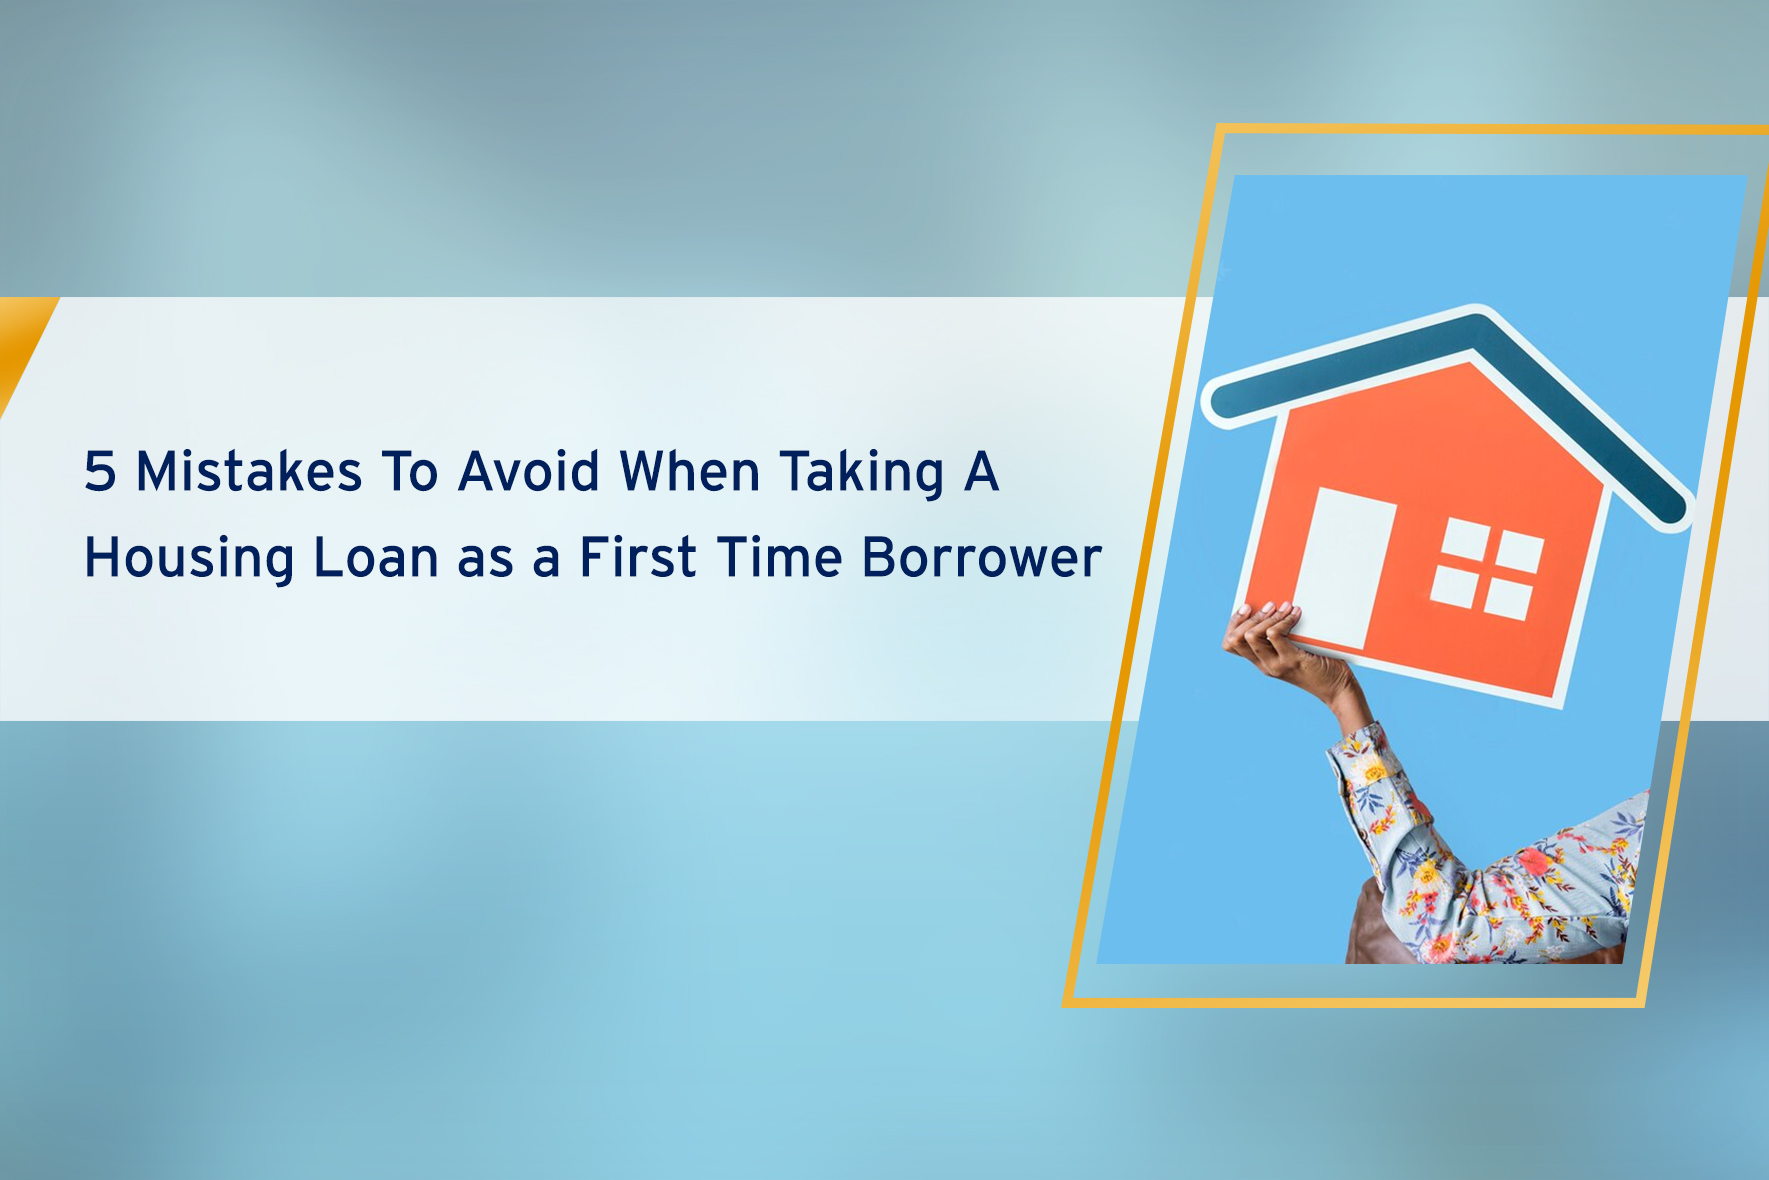 Avoiding mistakes for housing loan